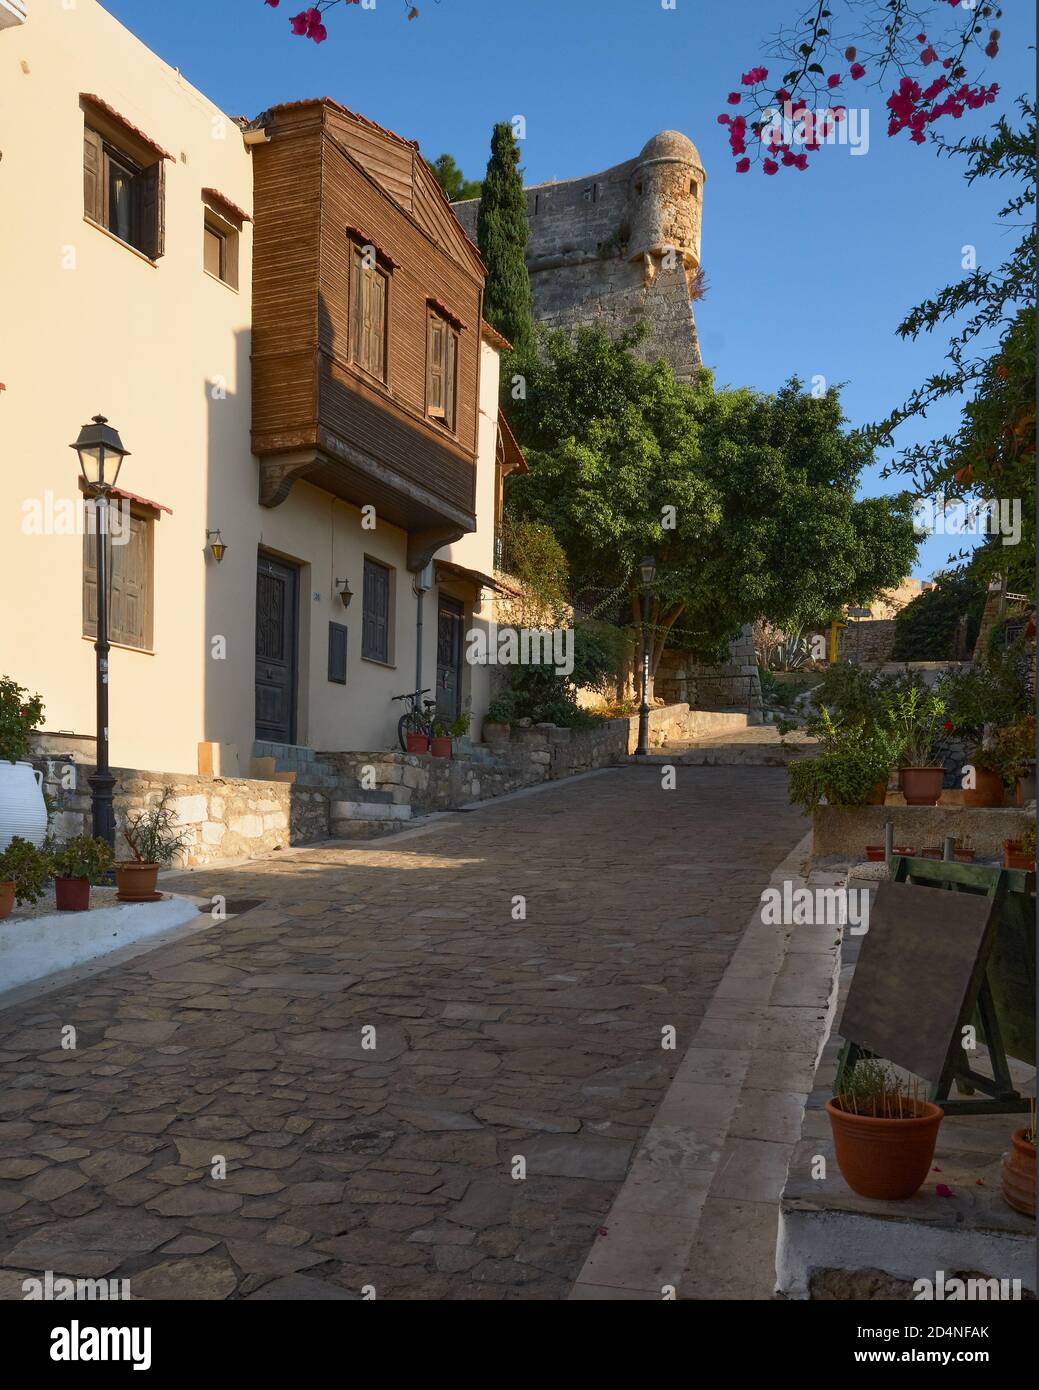 Traditionelle Häuser und historische gepflasterte Straße, die zum historischen Schloss in Rethimno Kreta Griechenland führt. Stockfoto